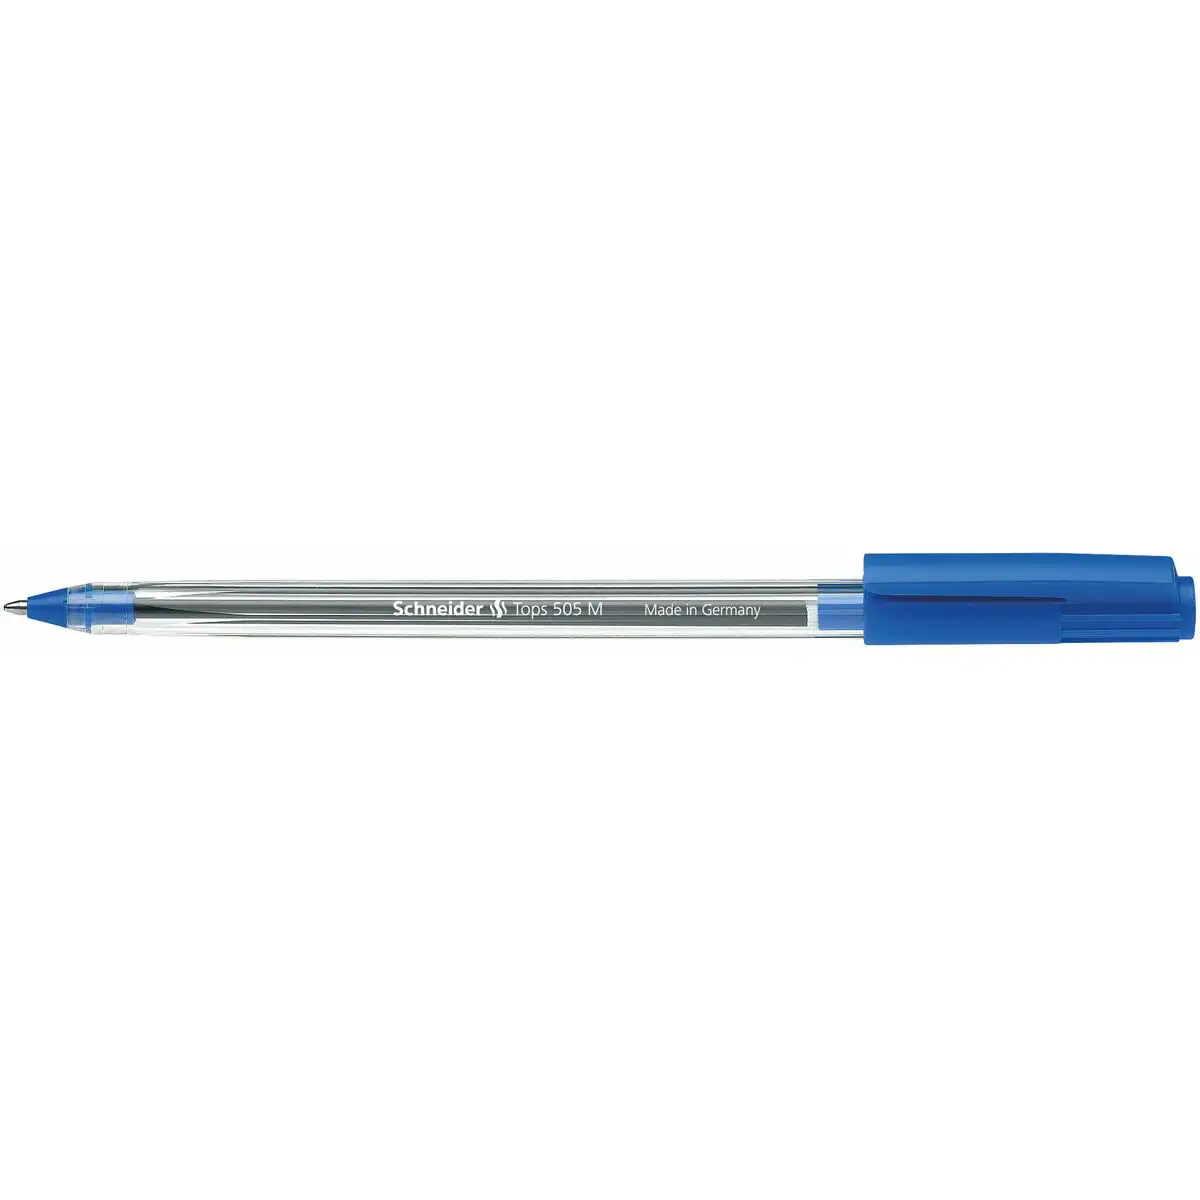 Crayon schneider tops 505 m bleu 50 unites _6269. DIAYTAR SENEGAL - Où Chaque Détail Compte. Naviguez à travers notre gamme variée et choisissez des articles qui ajoutent une touche spéciale à votre quotidien, toujours avec qualité et style.